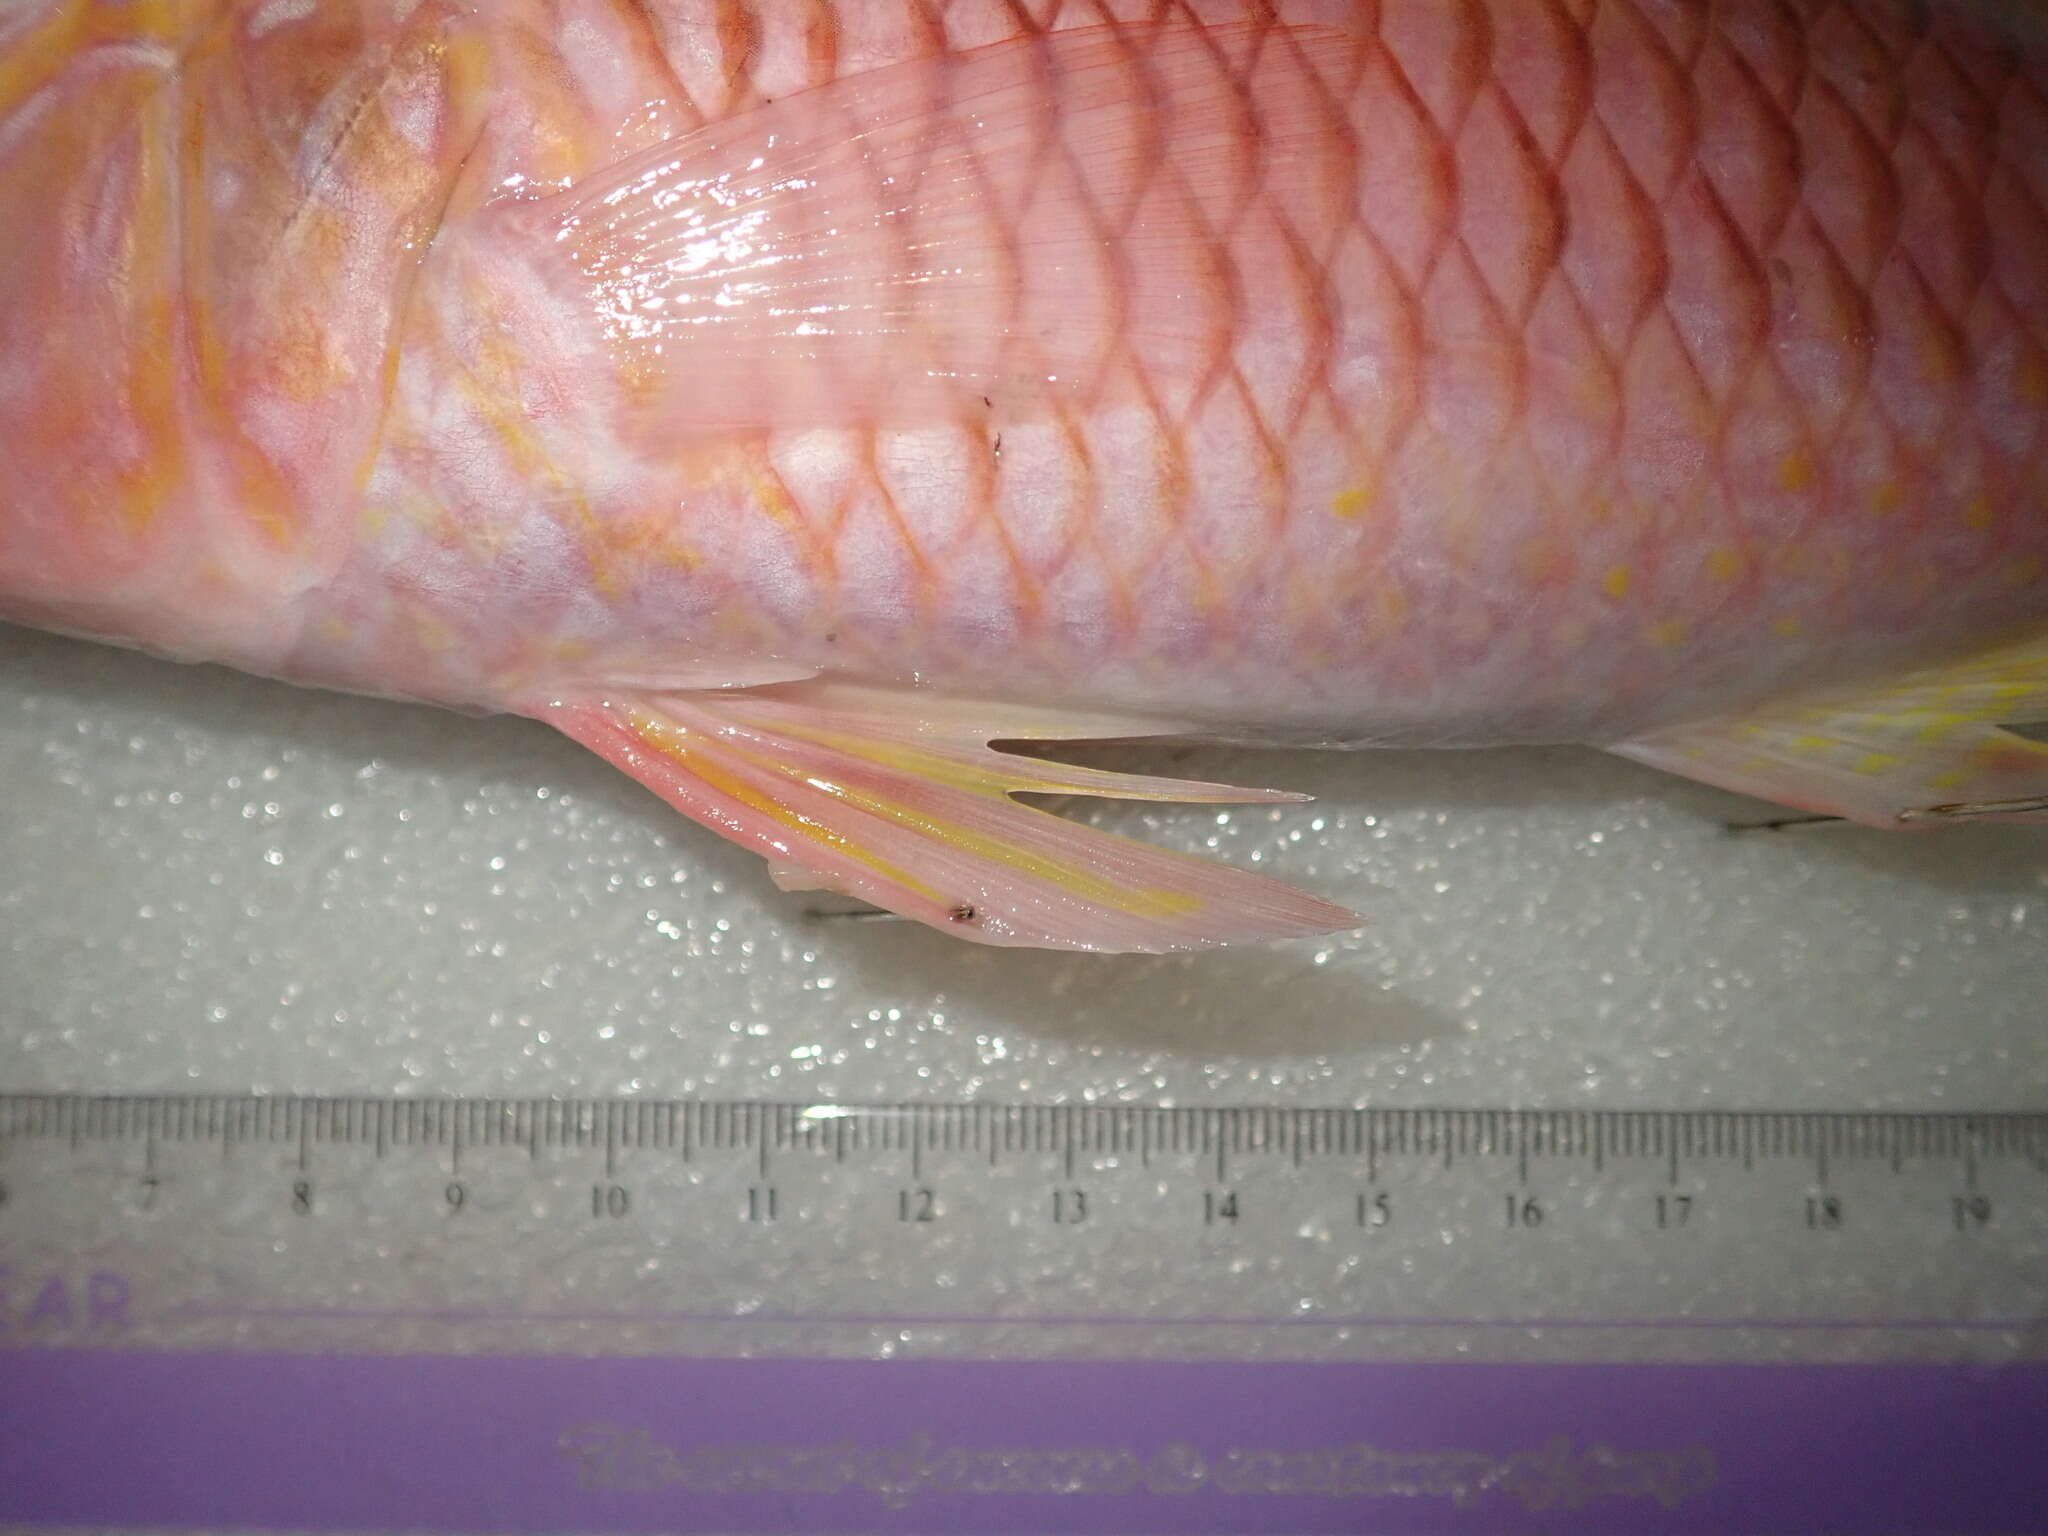 Image of Goatfish